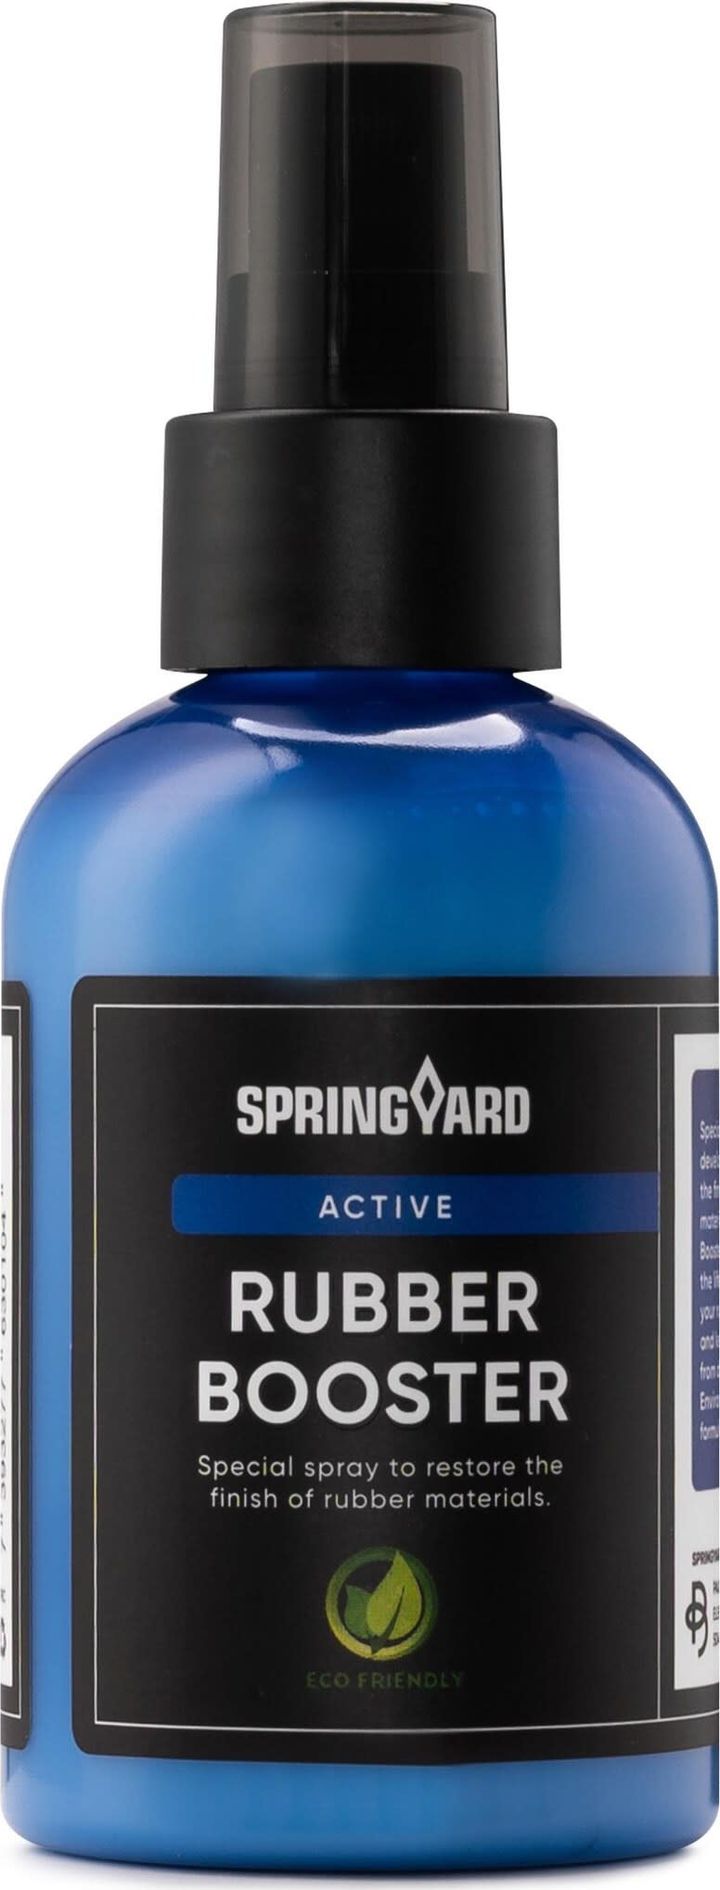 Springyard Rubber Booster Neutral Springyard